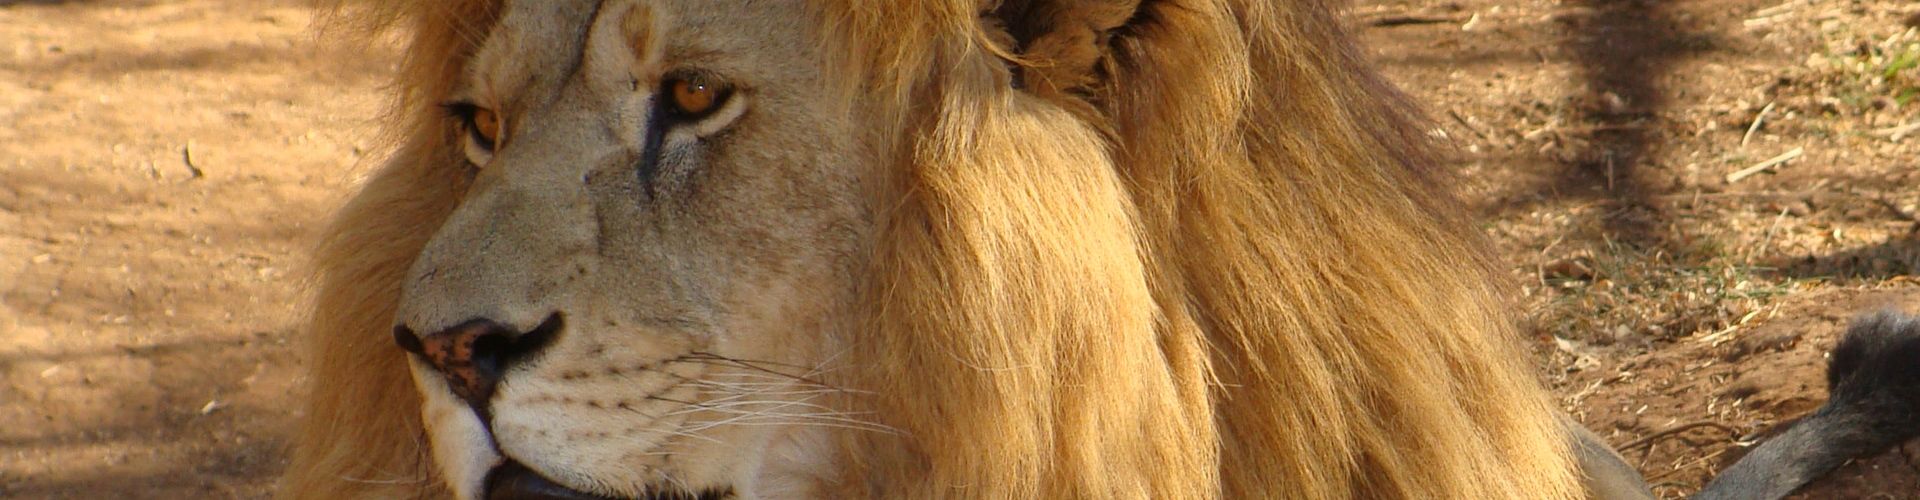 Een oudere mannelijke leeuw met littekens en een indrukwekkende manen